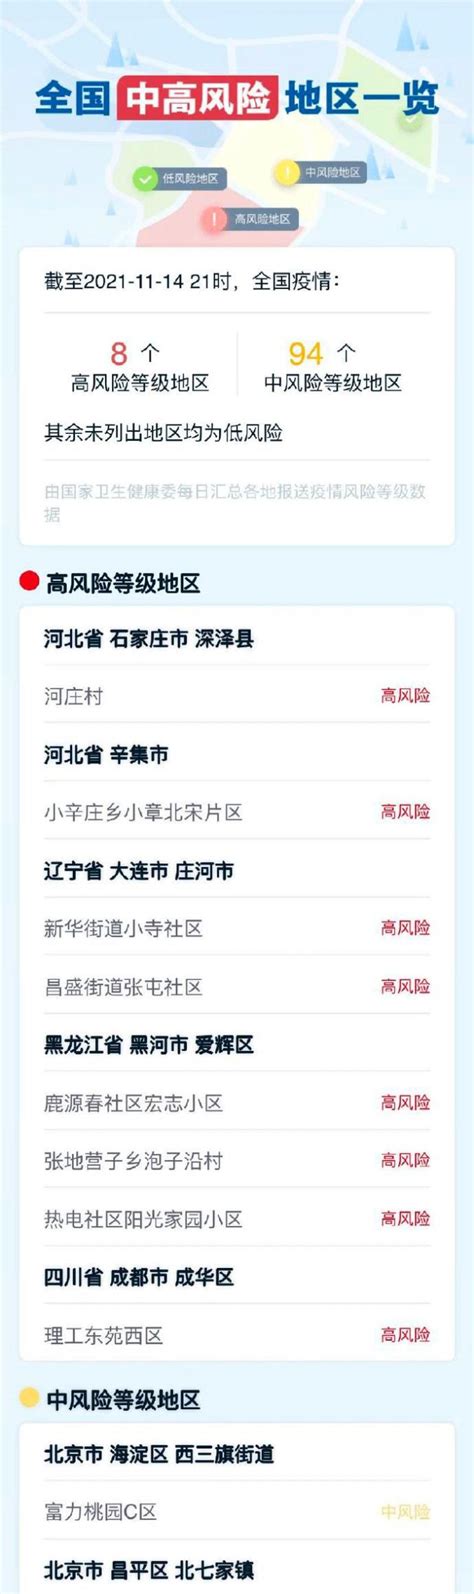 11月15日黑龙江新增2例本土确诊在黑河 黑龙江疫情最新消息今天 -新闻频道-和讯网